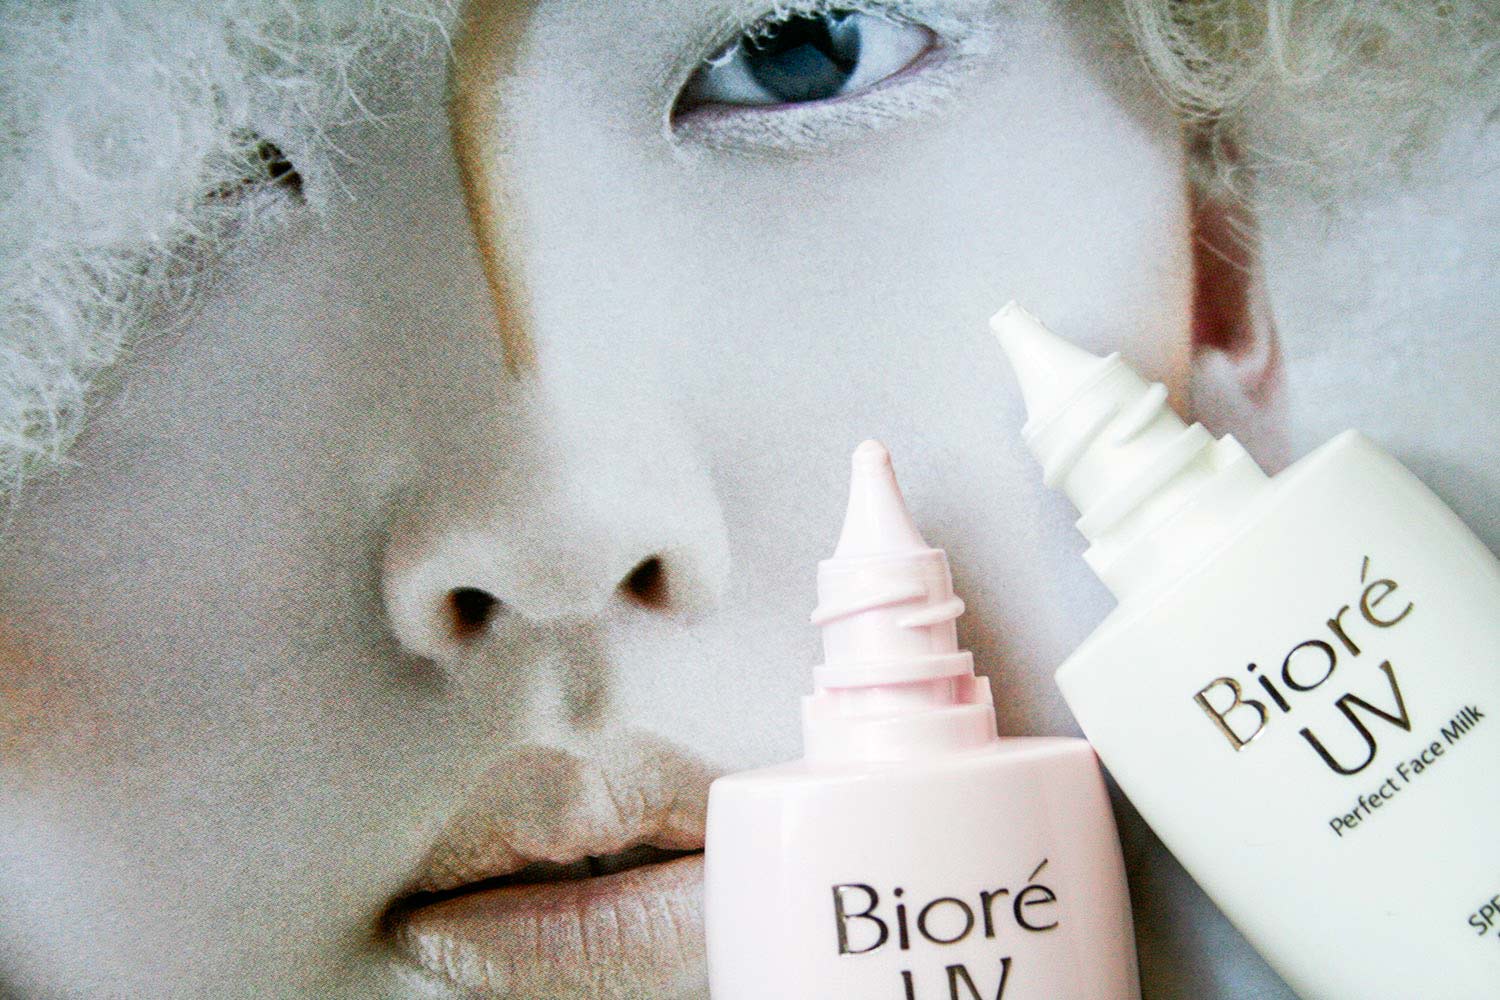 Kem chống nắng biore màu hồng Bioré UV Bright Face Milk dễ dàng sử dụng